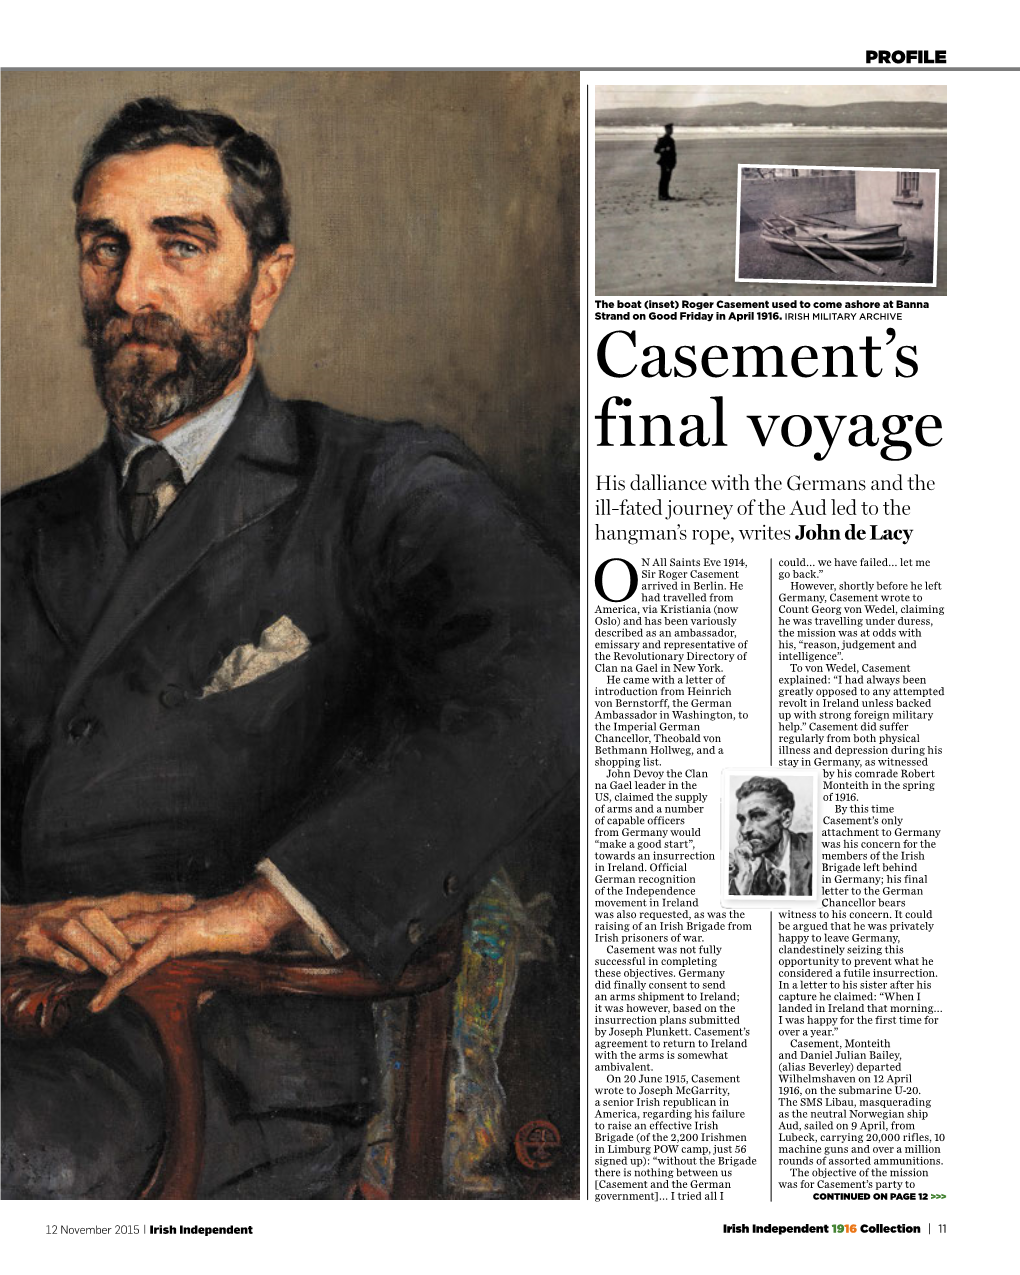 Casement's Final Voyage